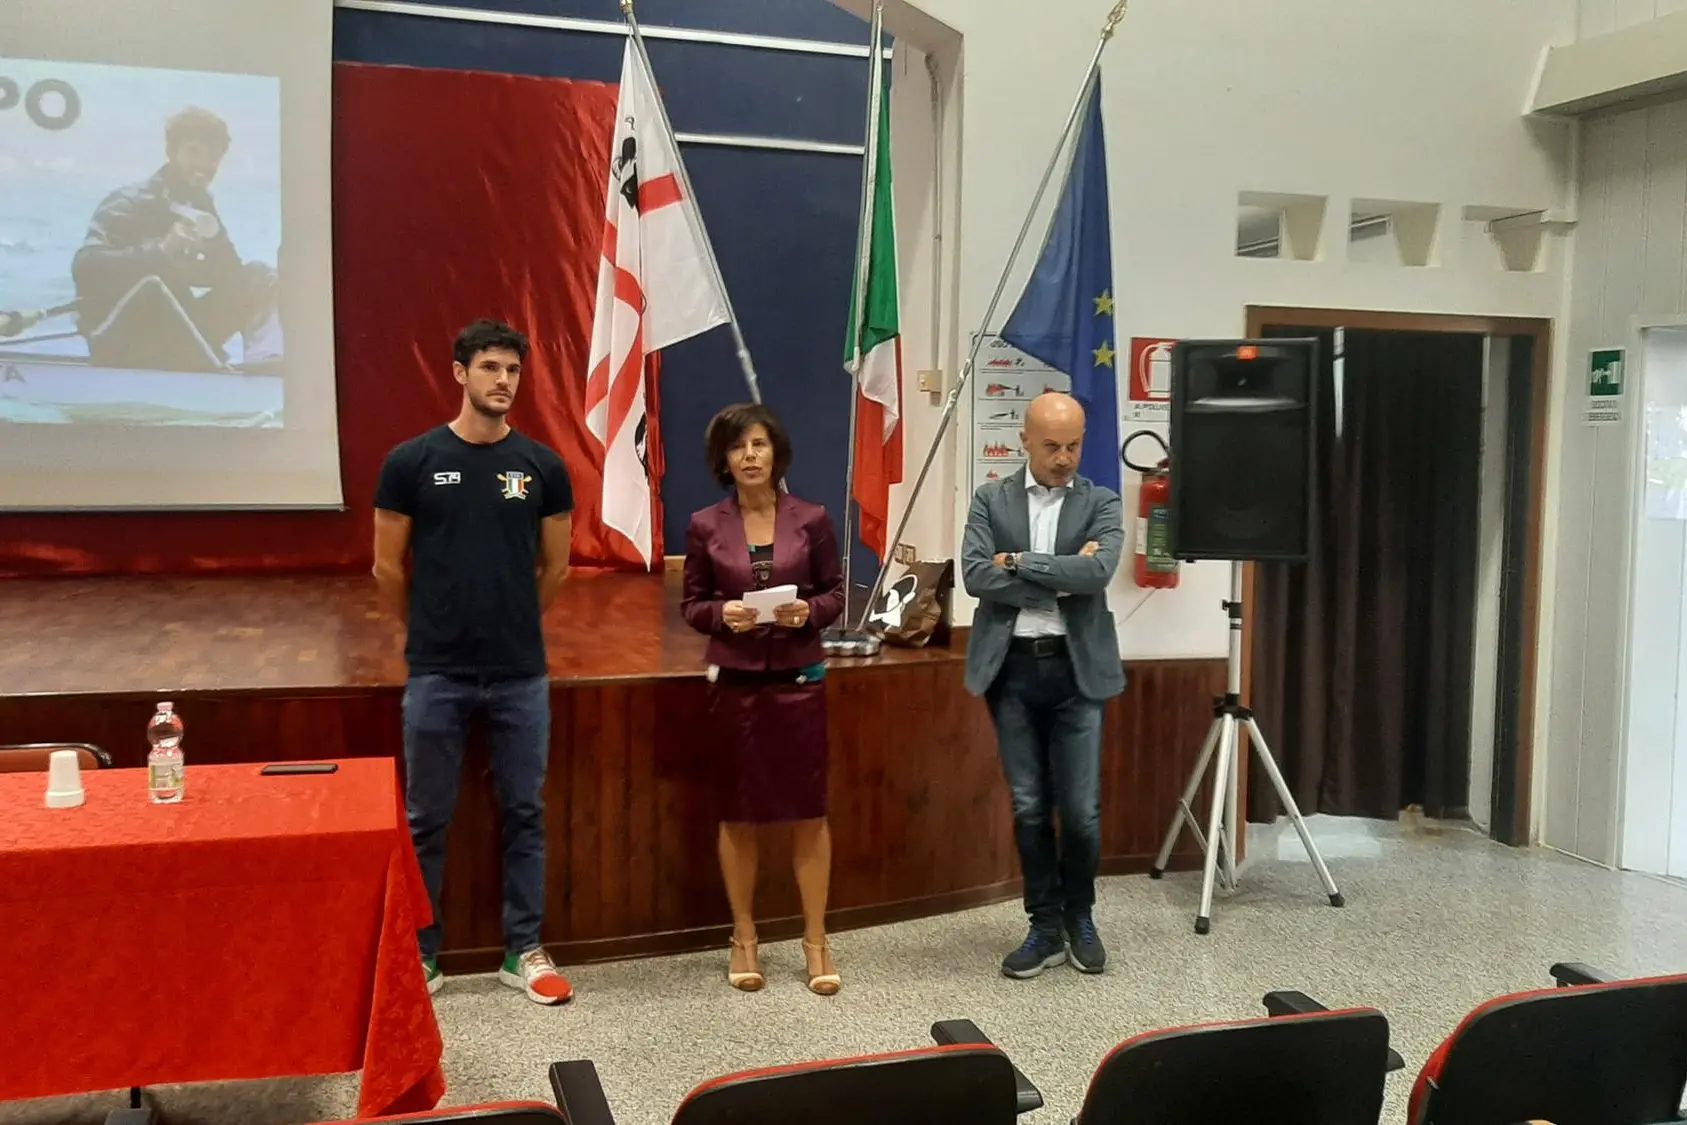 La dirigente scolastica Gavina Cappai e il docente Paolo Maioli presentano Stefano Oppo agli studenti (Foto Nachira)